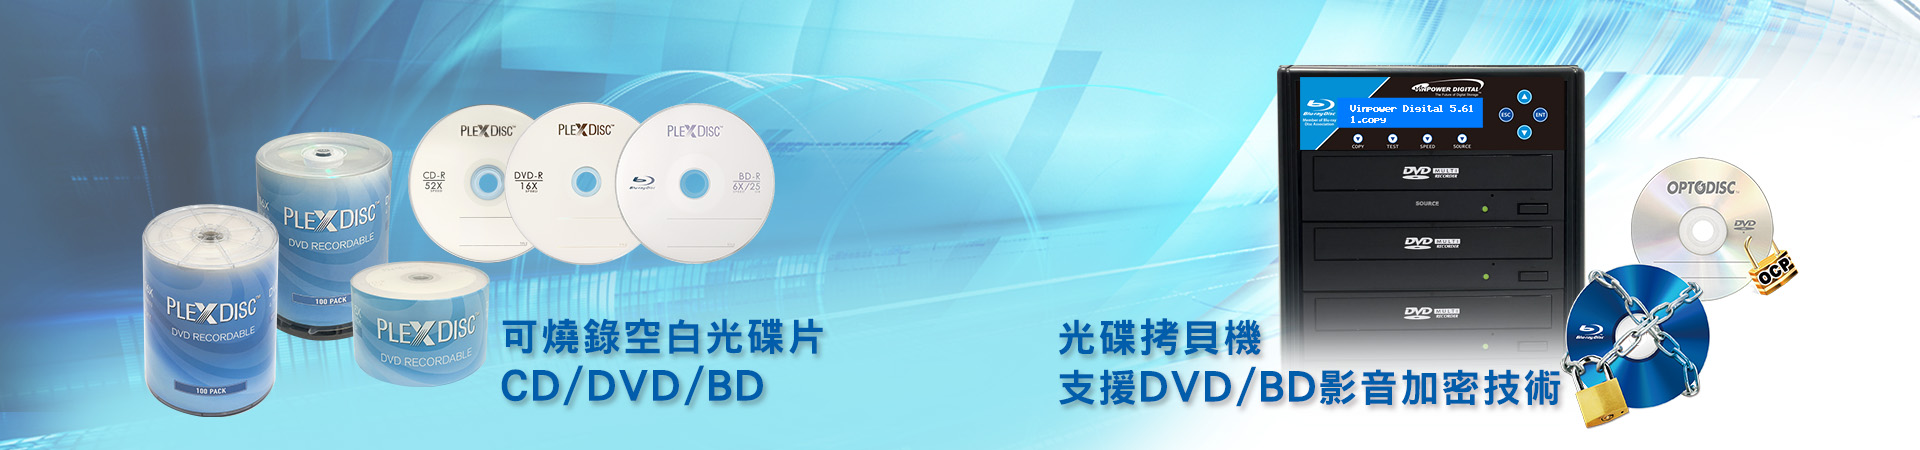 光碟拷貝機支援DVD/BD影音加密技術